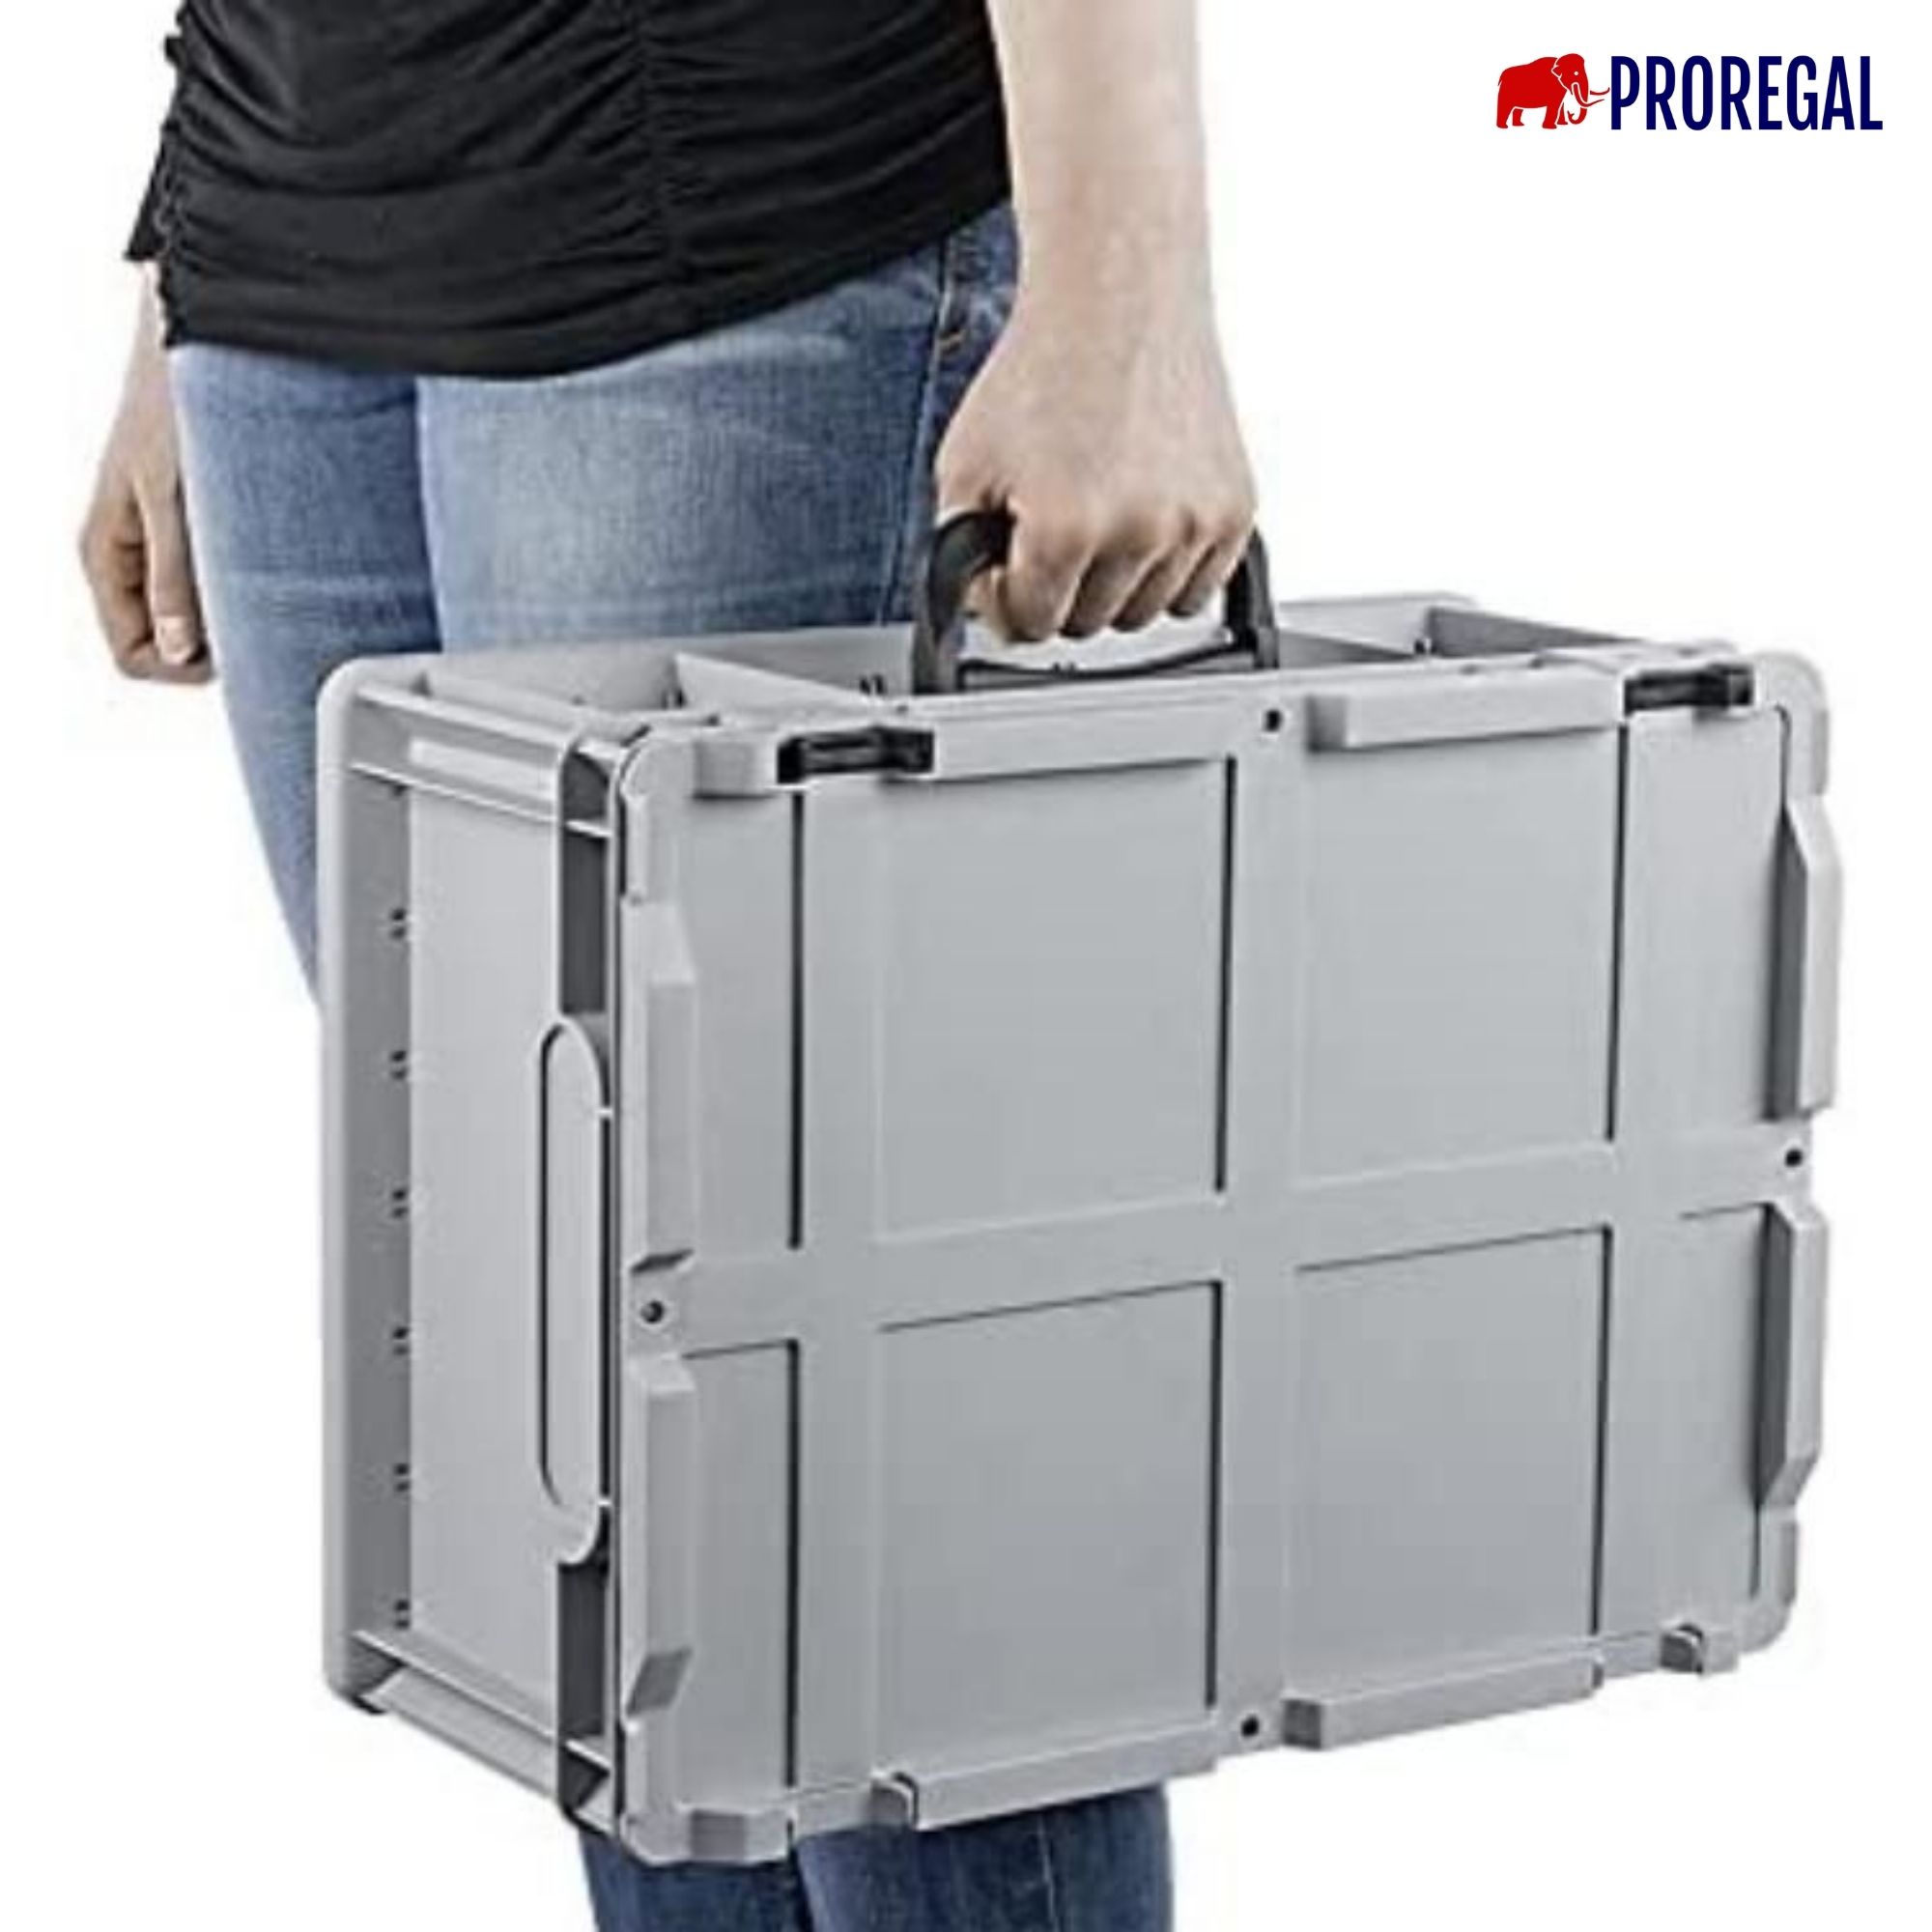 Eurobox NextGen Portable mit Rasterschaumstoff & Schaumstoffeinlage | HxBxT 18,5x40x60cm | 34 Liter | Eurobehälter, Transportbox, Transportbehälter, Stapelbehälter